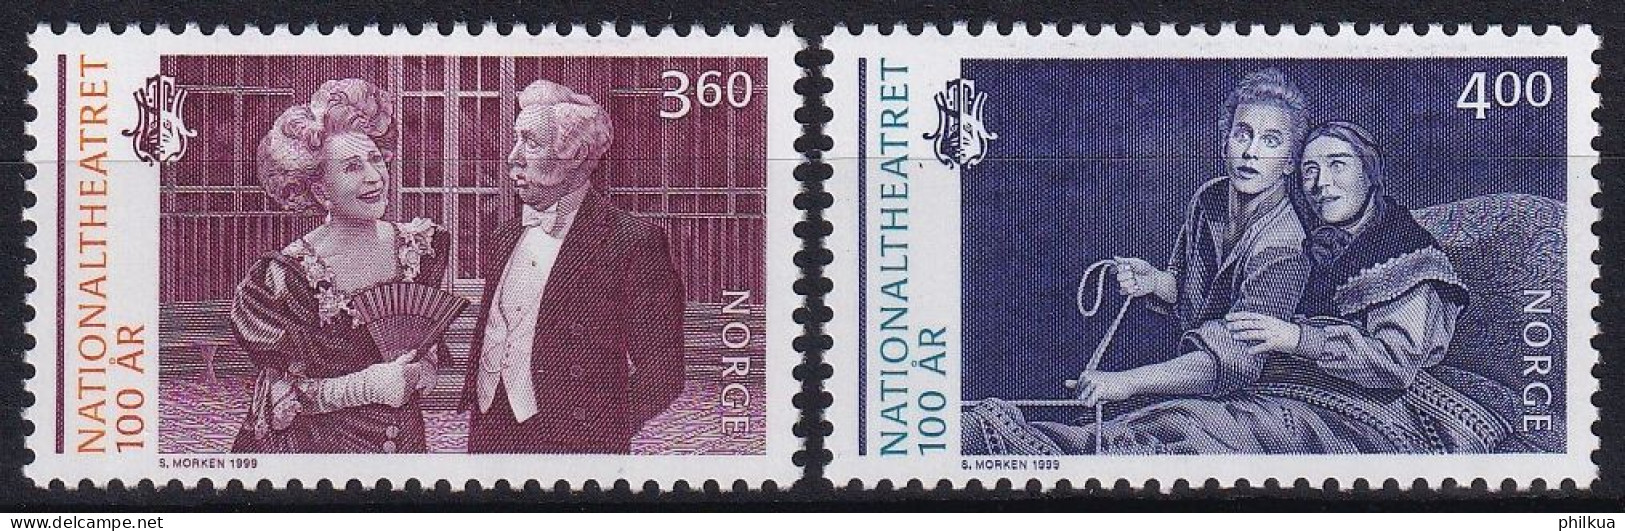 MiNr. 1333 - 1334 Norwegen  1999, 19. Nov. 100 Jahre Nationaltheater, Oslo - Postfrisch/**/MNH - Unused Stamps